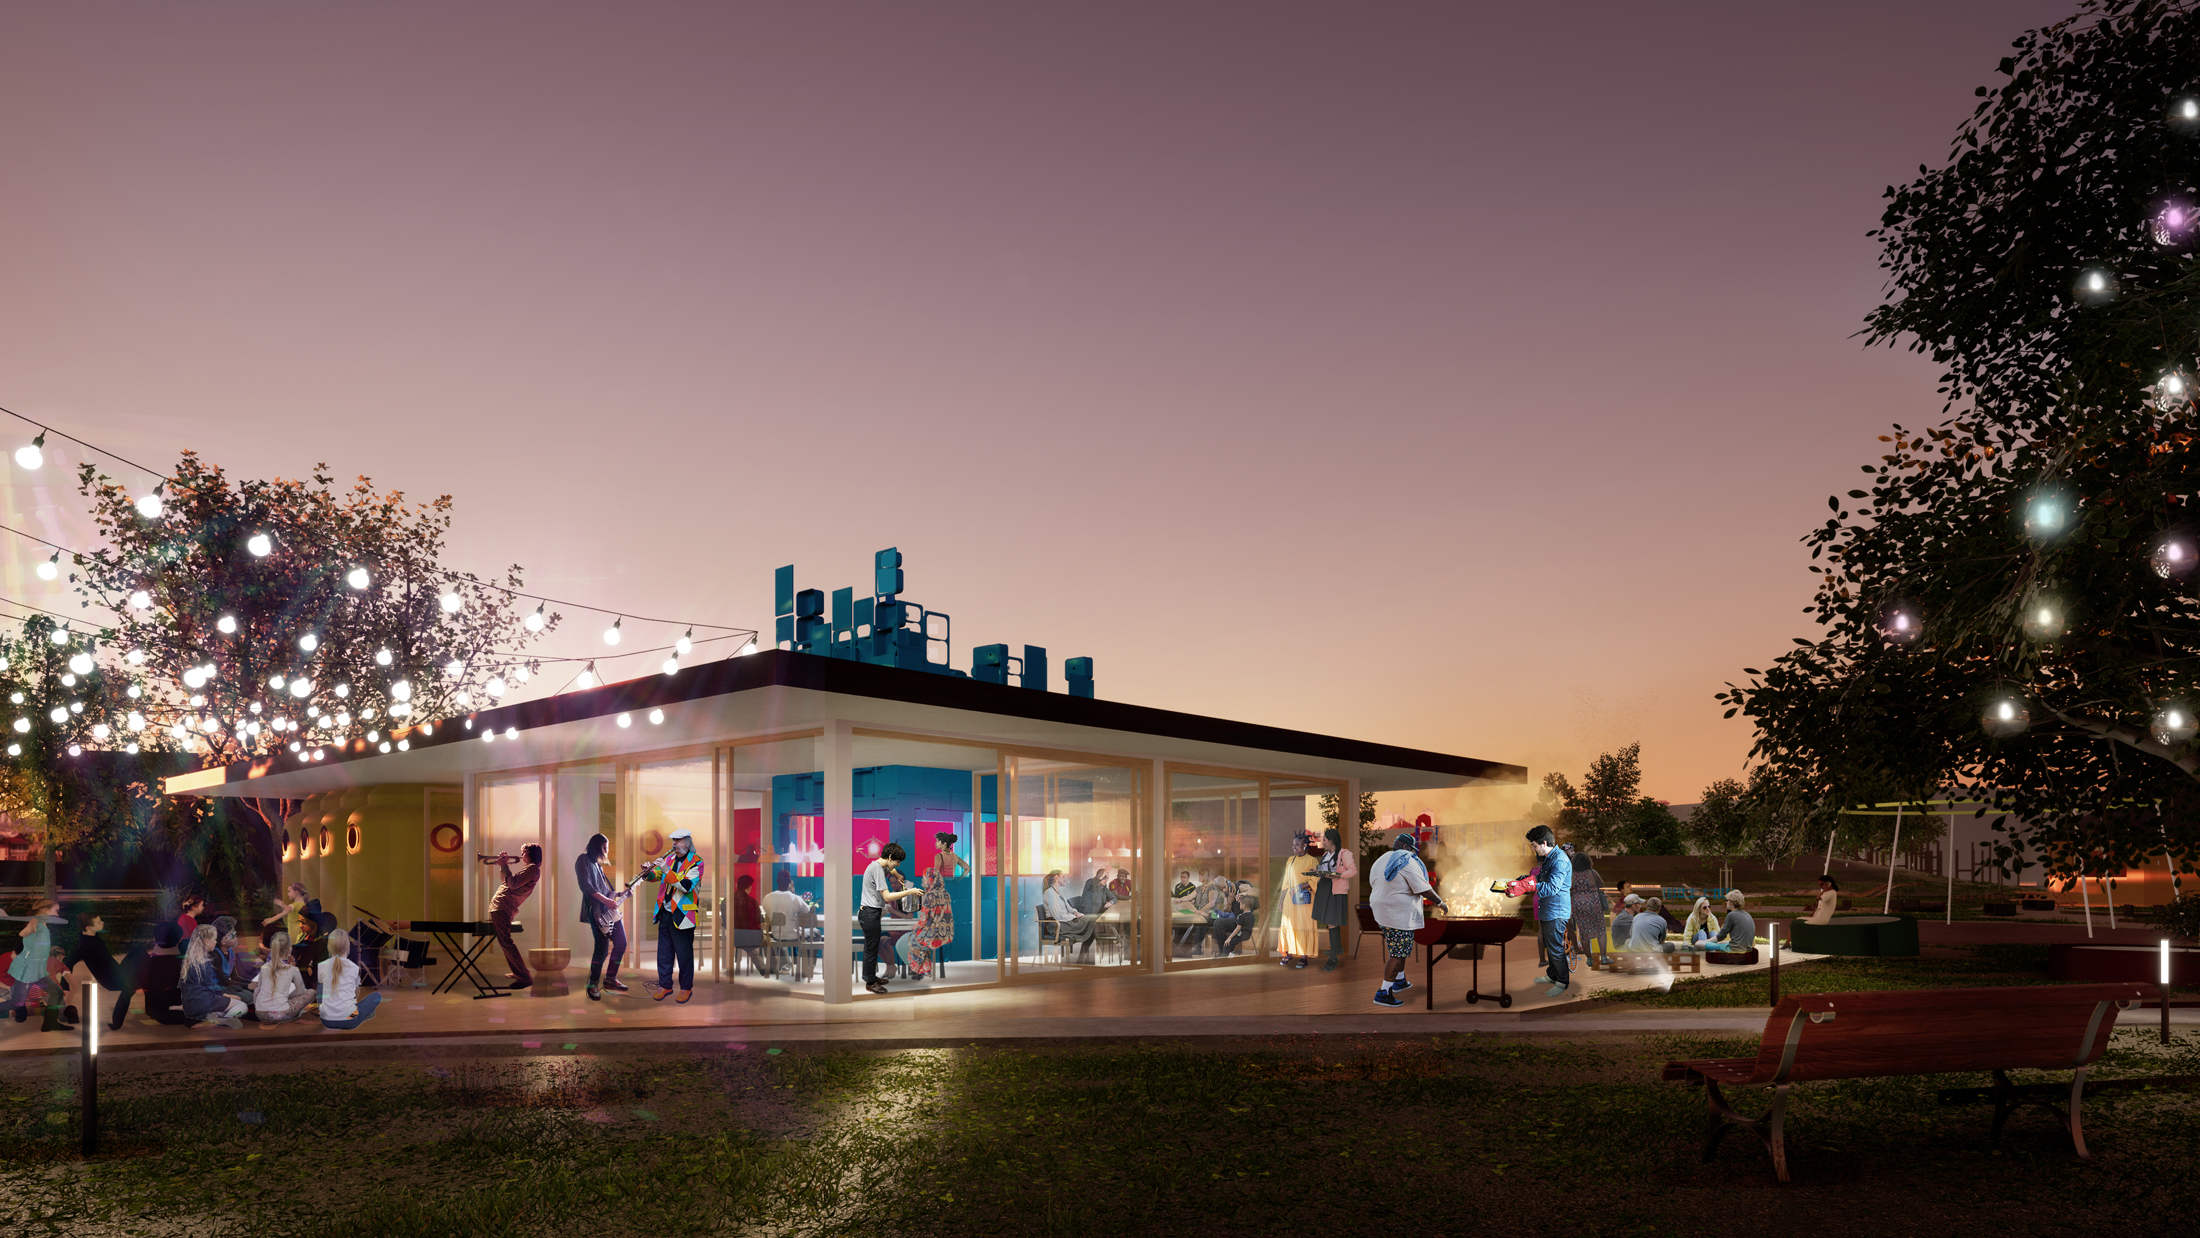 Community Centre De Zeeslag, designed by NOAHH | Network Oriented Architecture